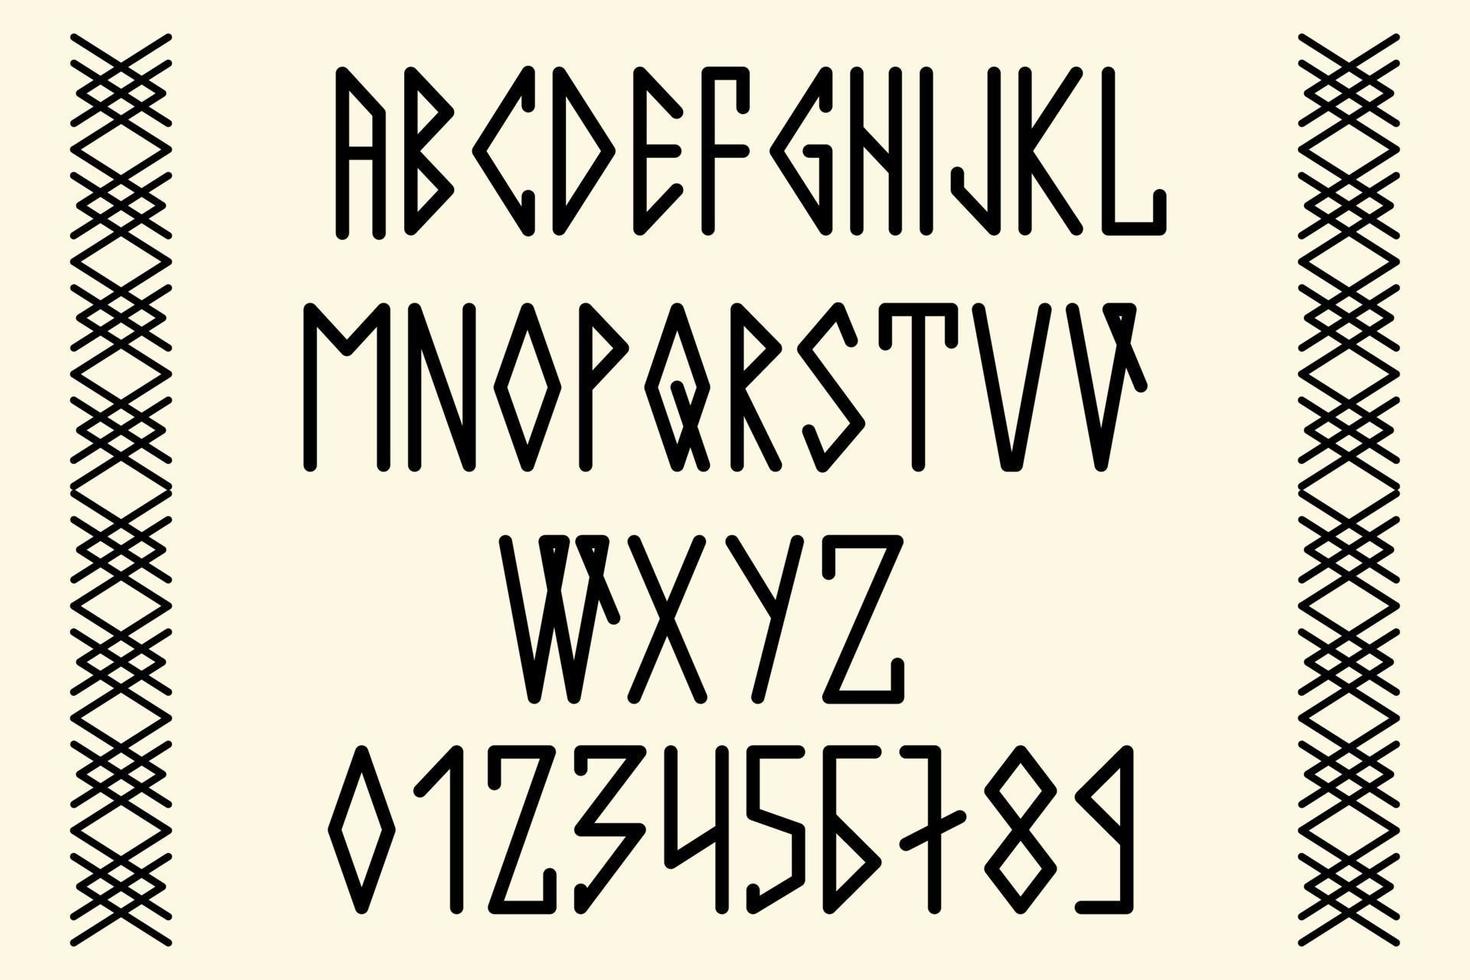 skandinaviskt manus, med stora bokstäver i stil med nordiska runor. modern design. ett magiskt runteckensnitt i de nordliga folkens etniska stil. latinska bokstäver, siffror. vektor illustration.